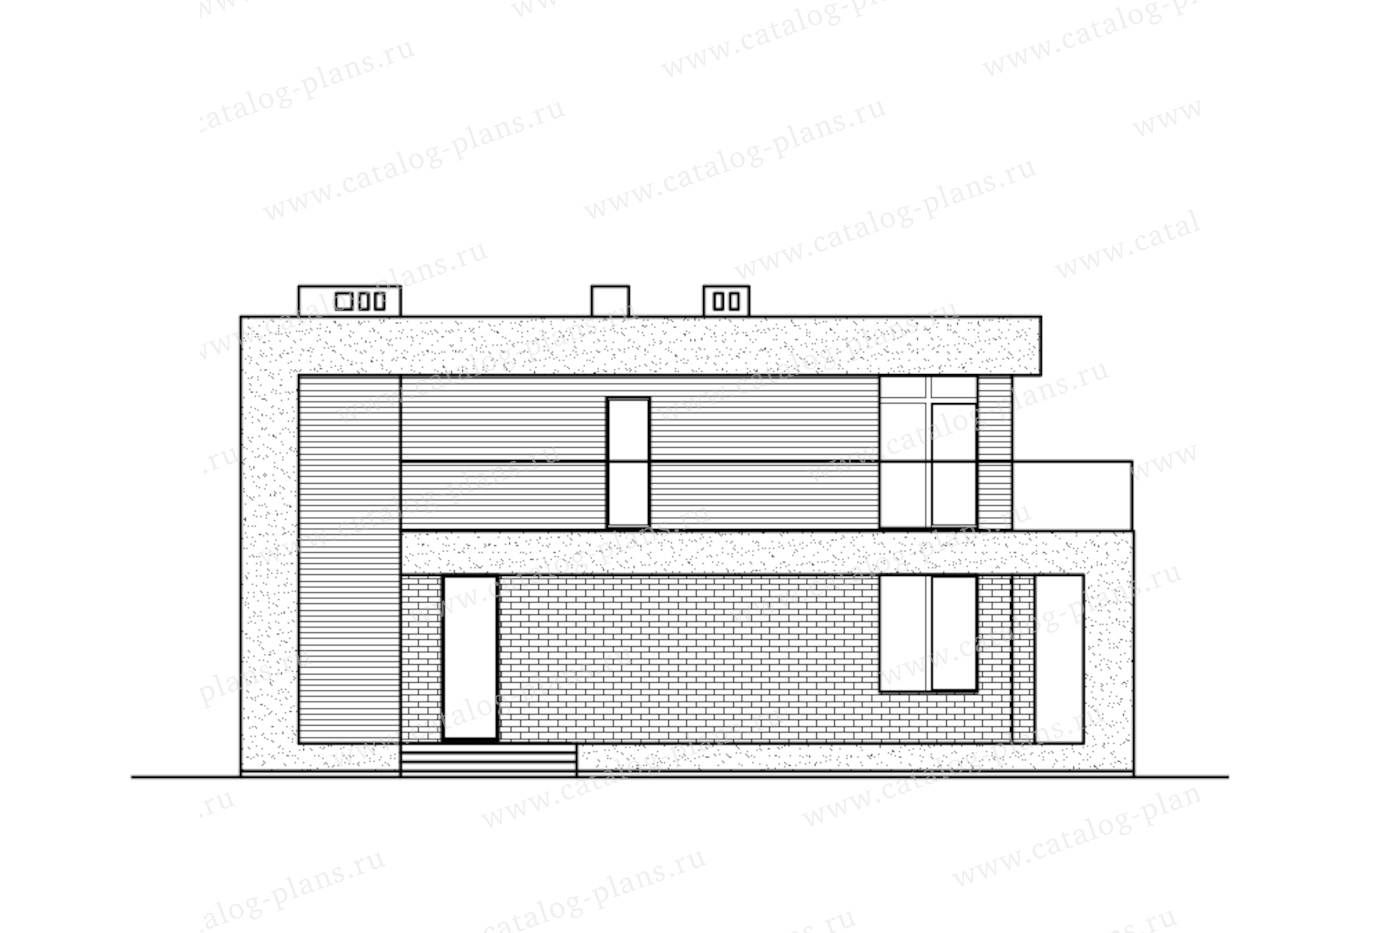 Проект 63-42W, жилой дом, материал - газобетонные блоки 400, количество этажей - 2, архитектурный стиль - хай-тек, фундамент - монолитная ж/б плита